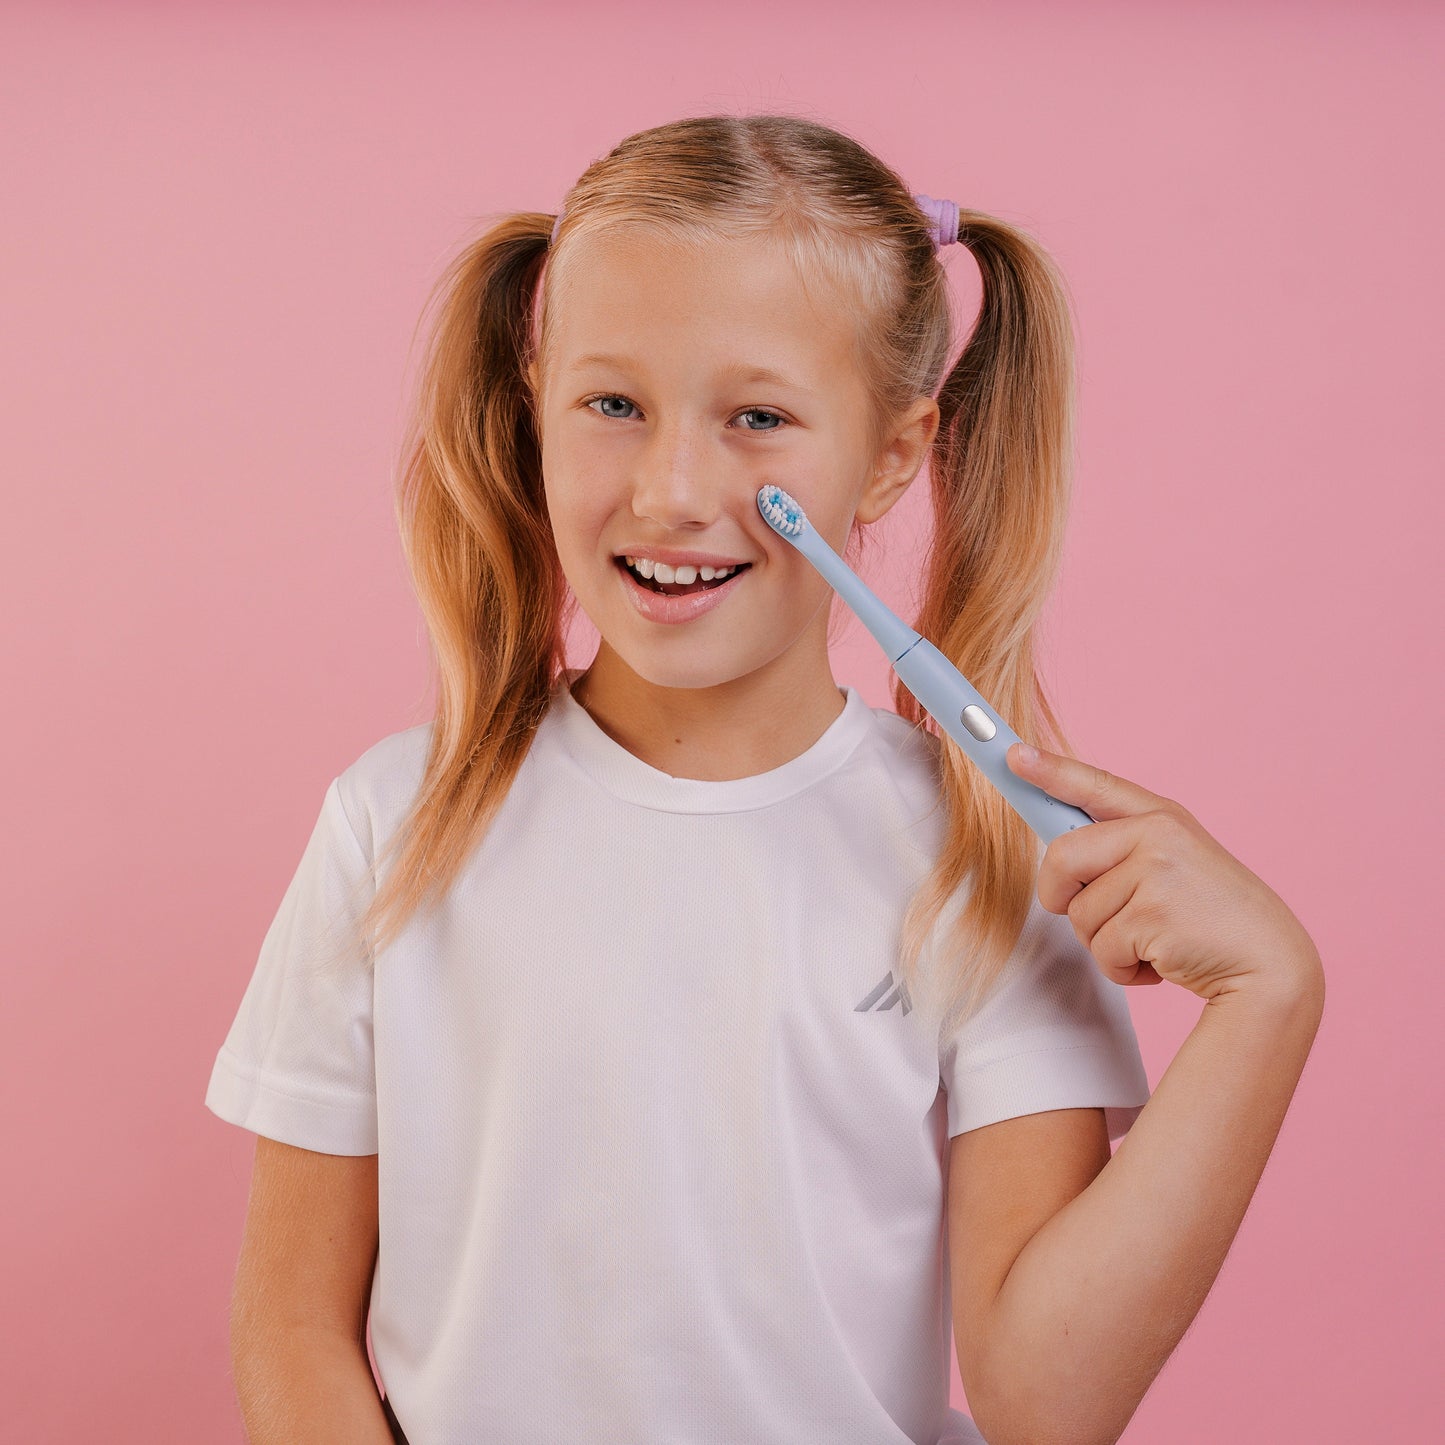 НАБОР детская электрическая зубная щетка Smiley Light синяя купити дитячу електричну зубну щітку купить детскую электрическую зубную щетку купить электрощетку детскую електрична зубна щітка дитяча